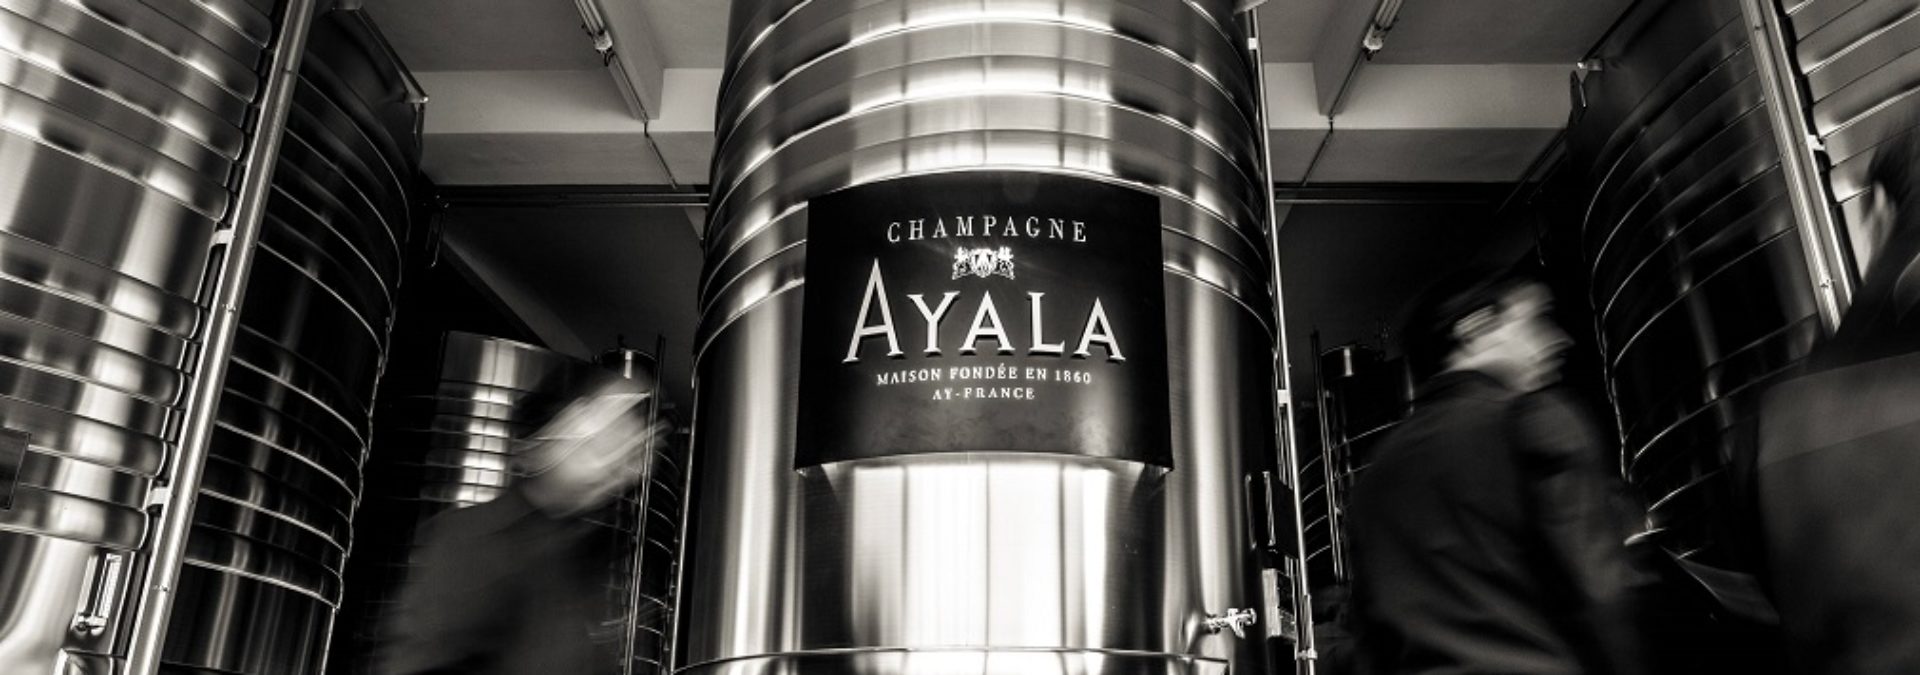 Champagne AYALA